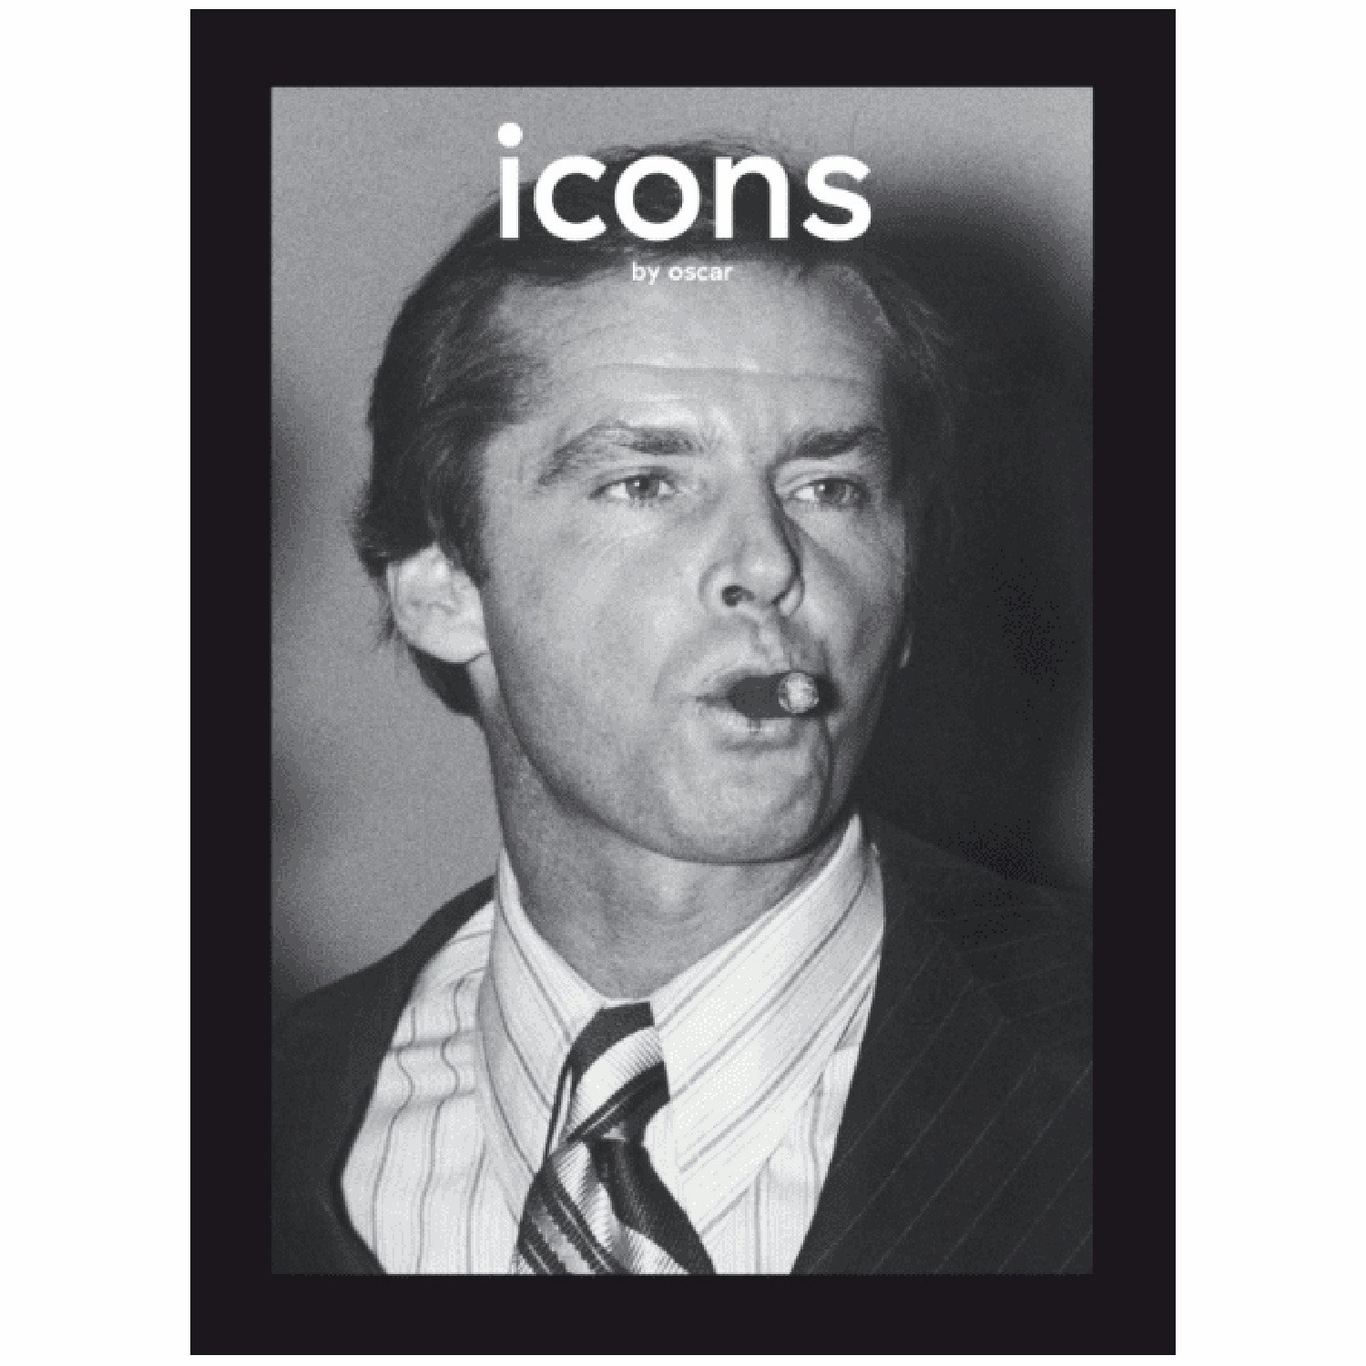 Icons by Oscar Buch